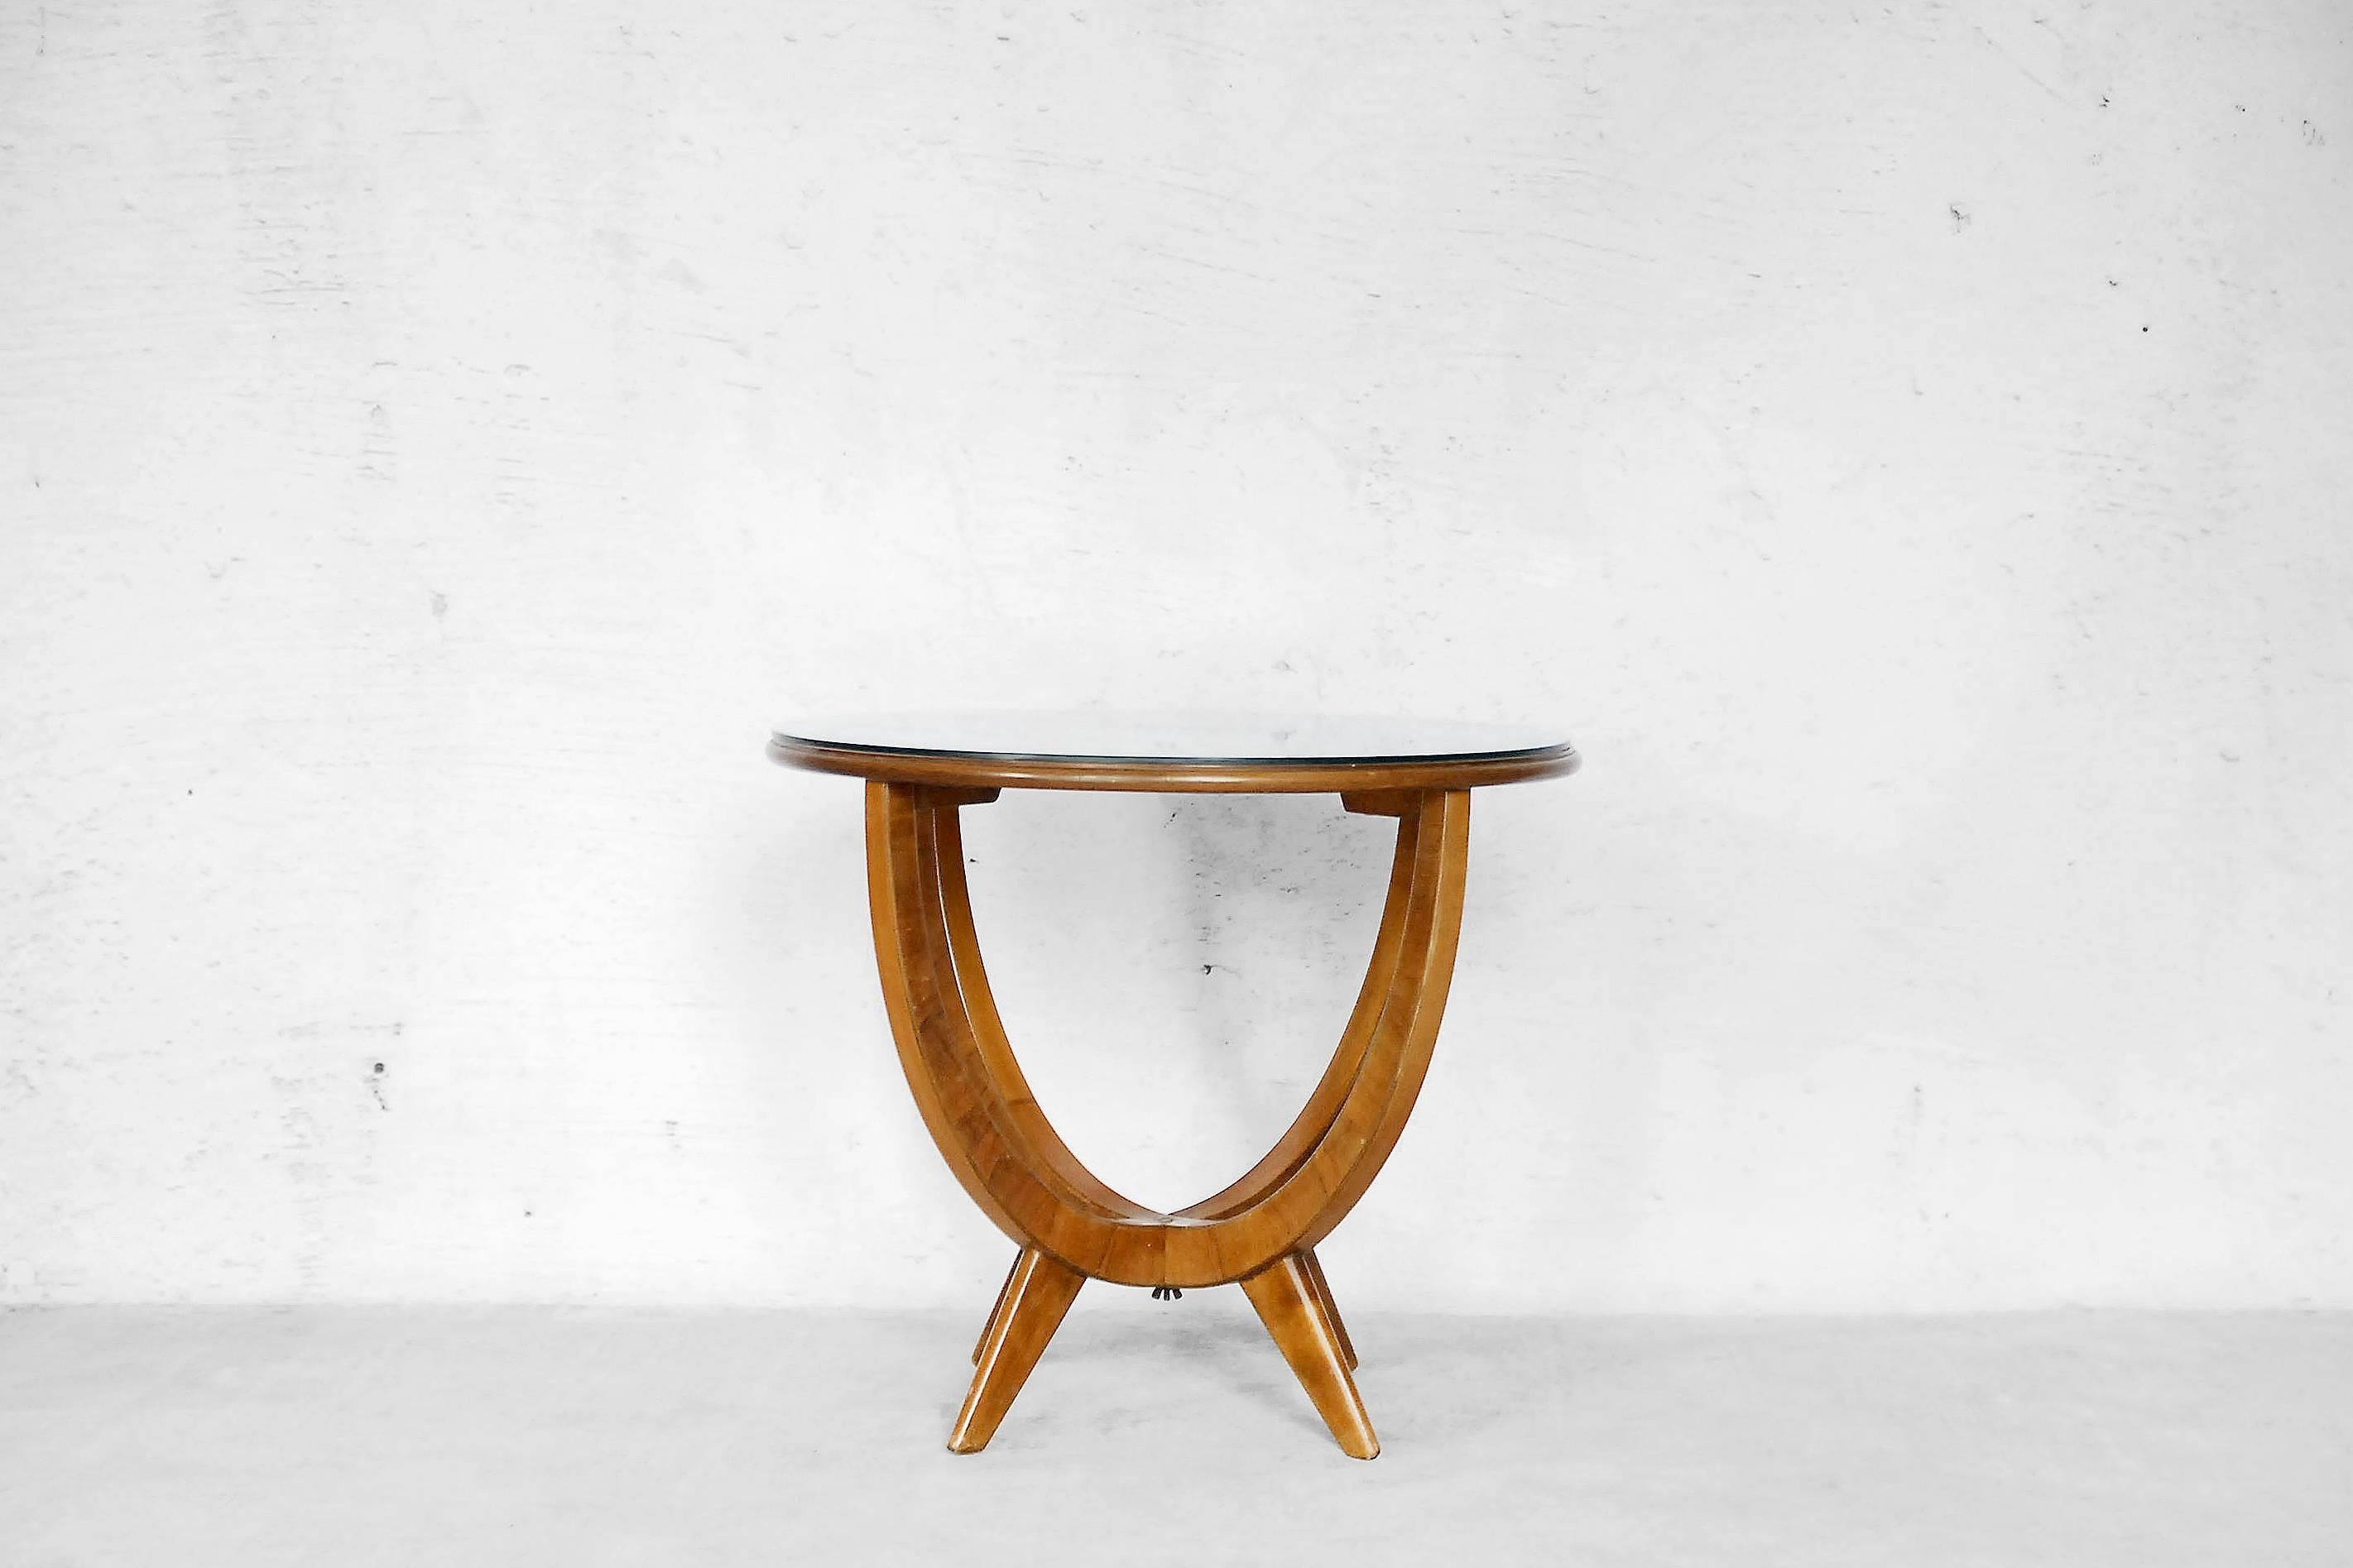 Woodwork Polish Walnut Table from Bydgoskie Fabryki Mebli, 1950s